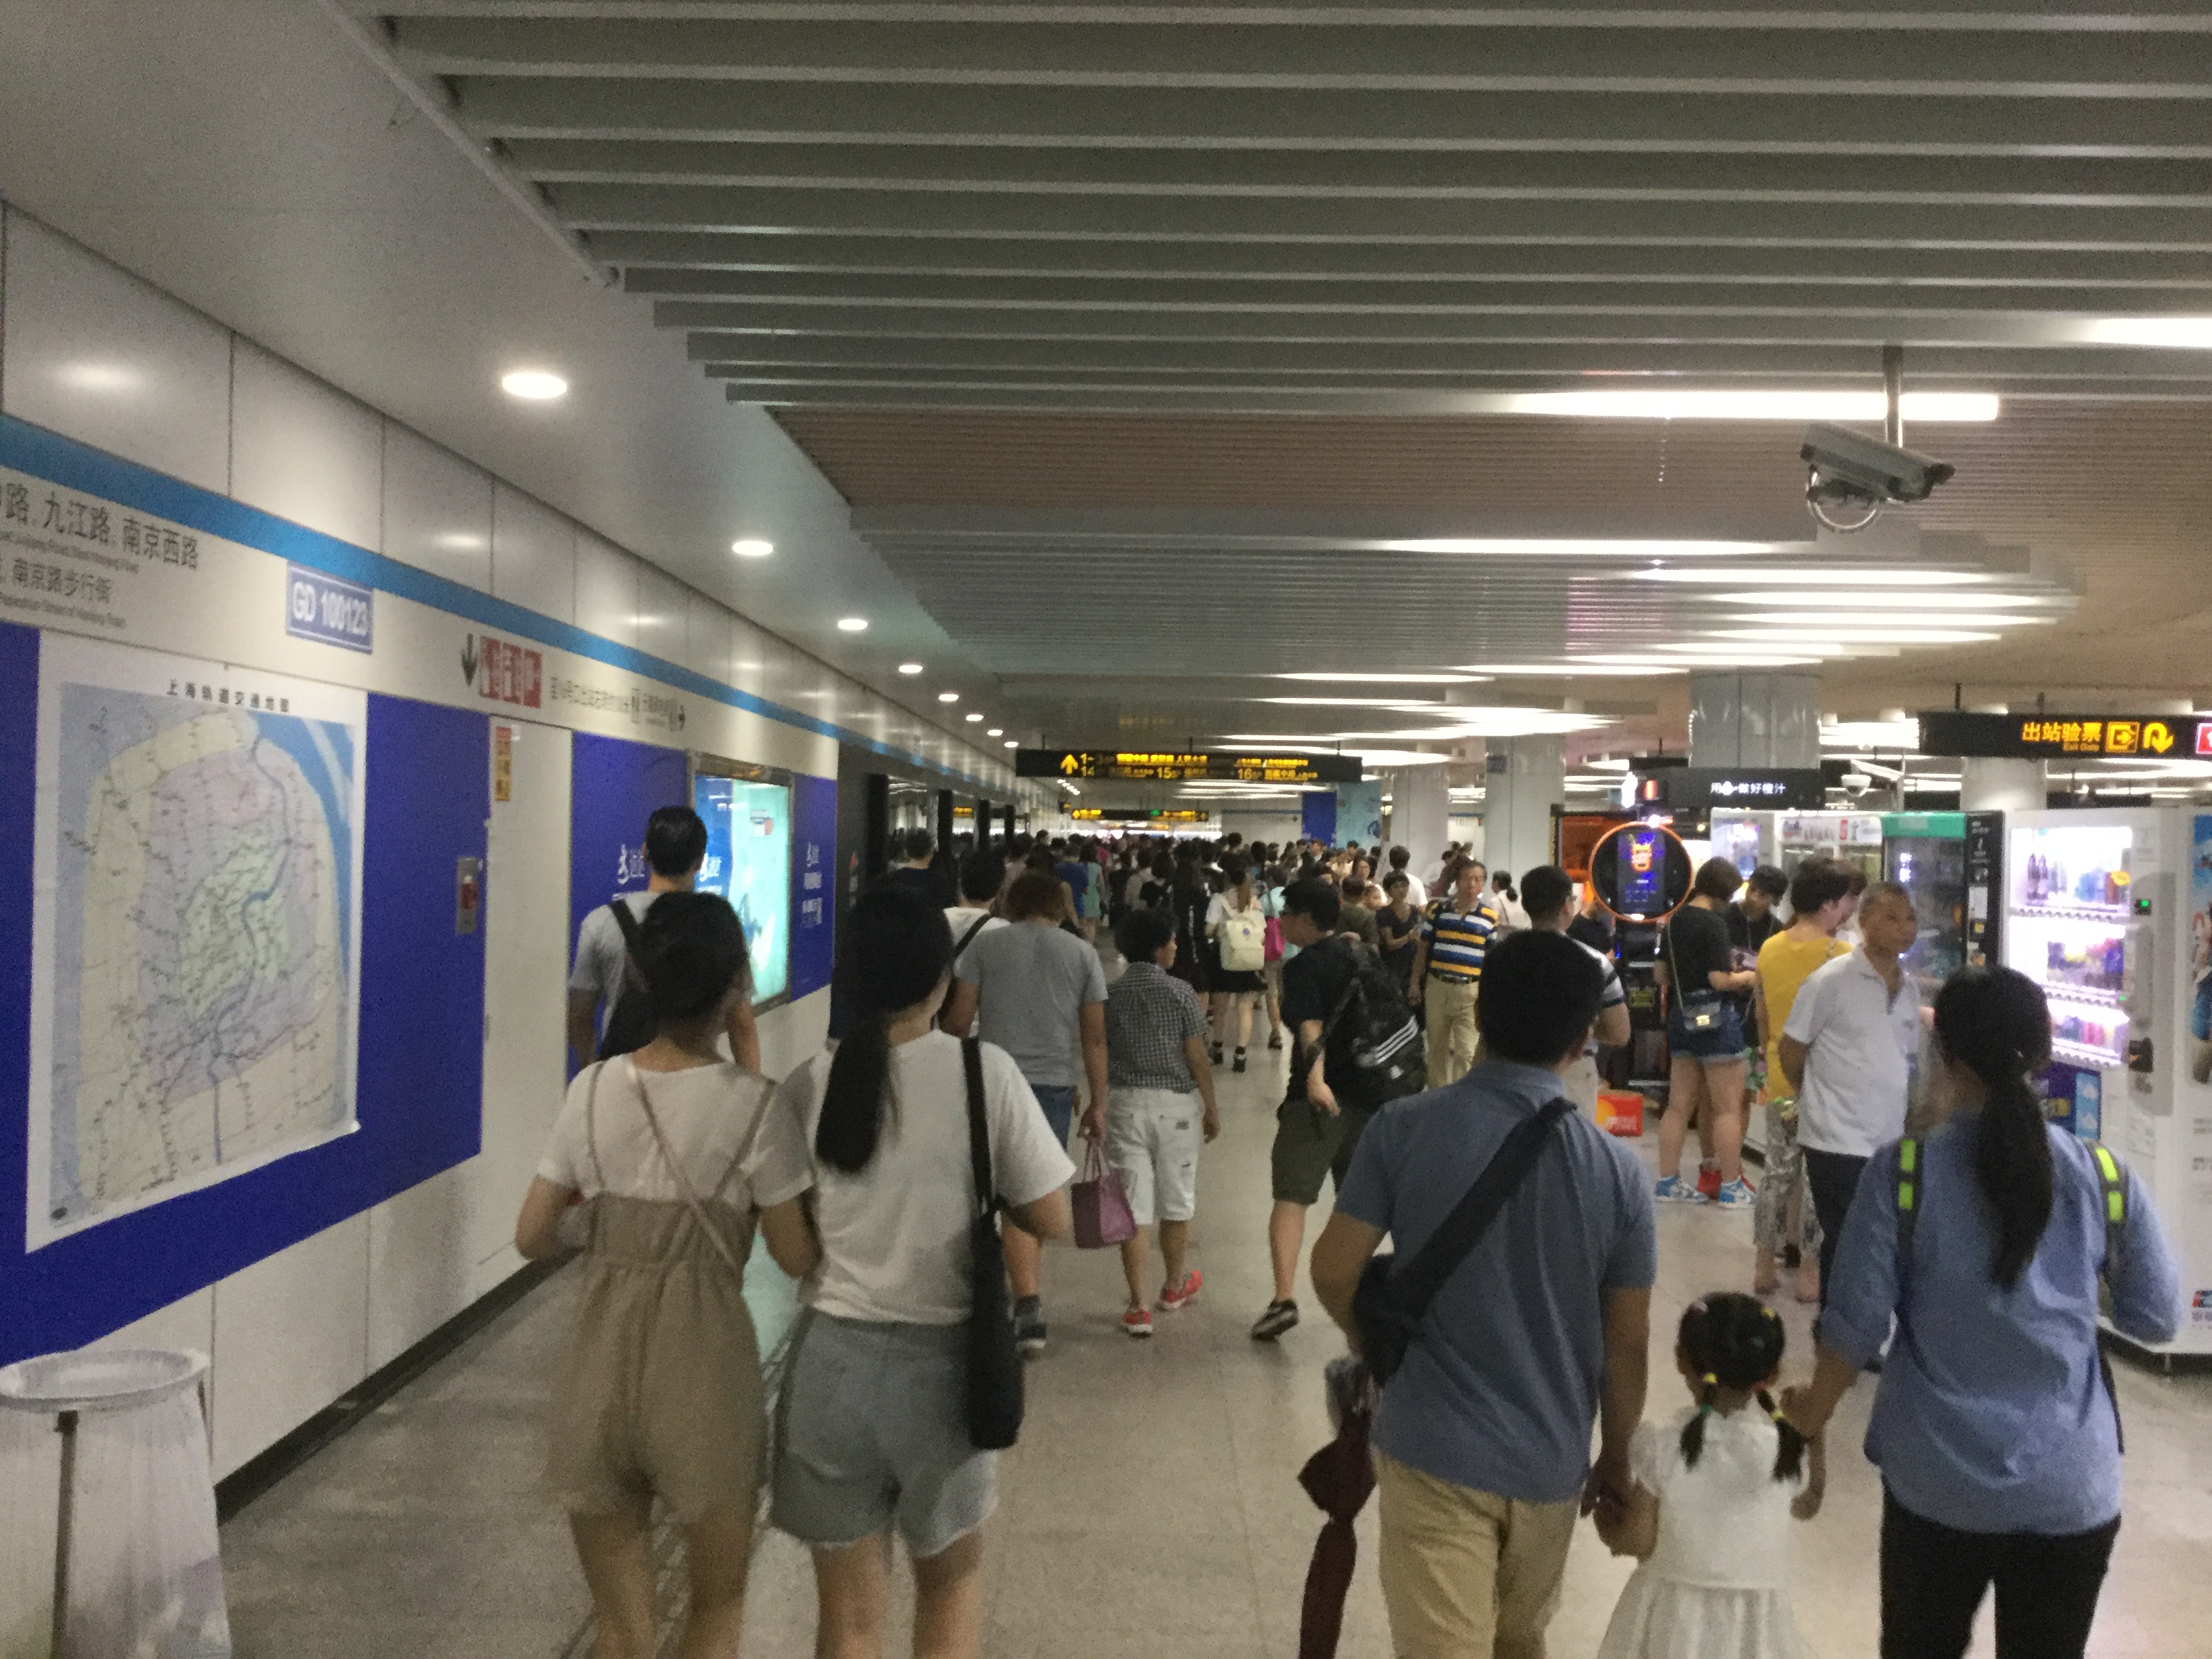 上海“徹底現調”レポート【14】新しい路線「地下鉄13号線」の特徴